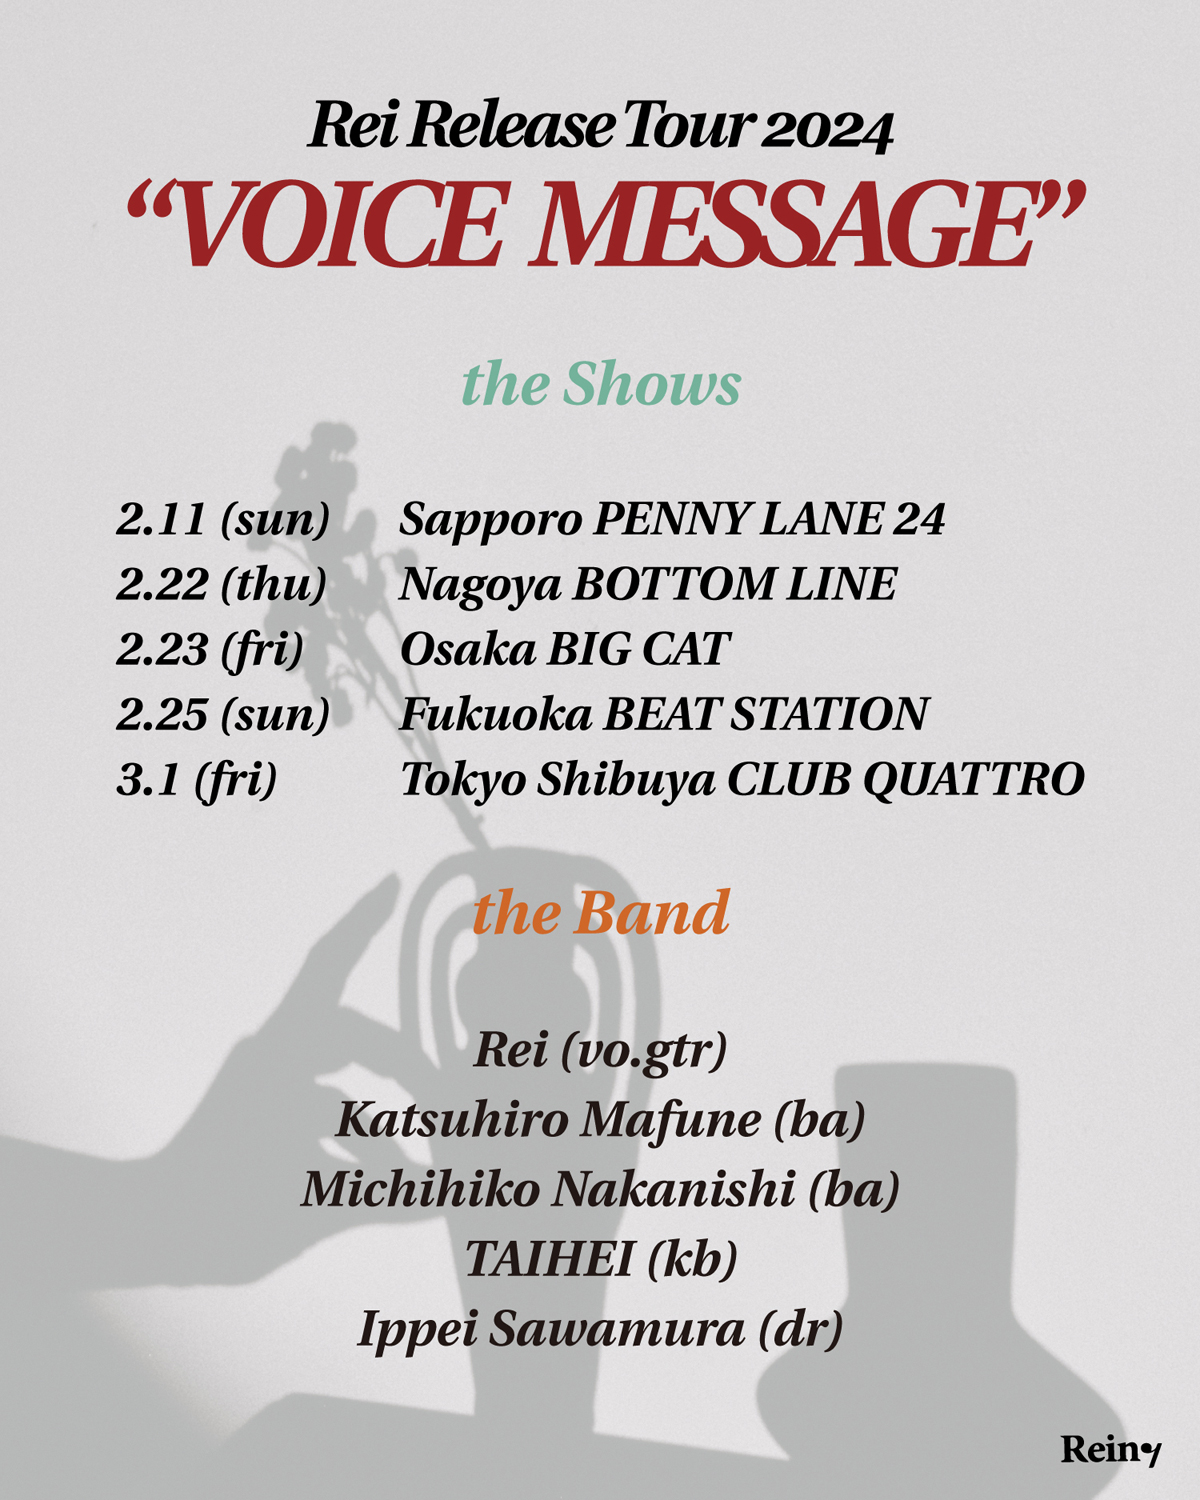 Rei Release Tour 2024 "VOICE MESSAGE"